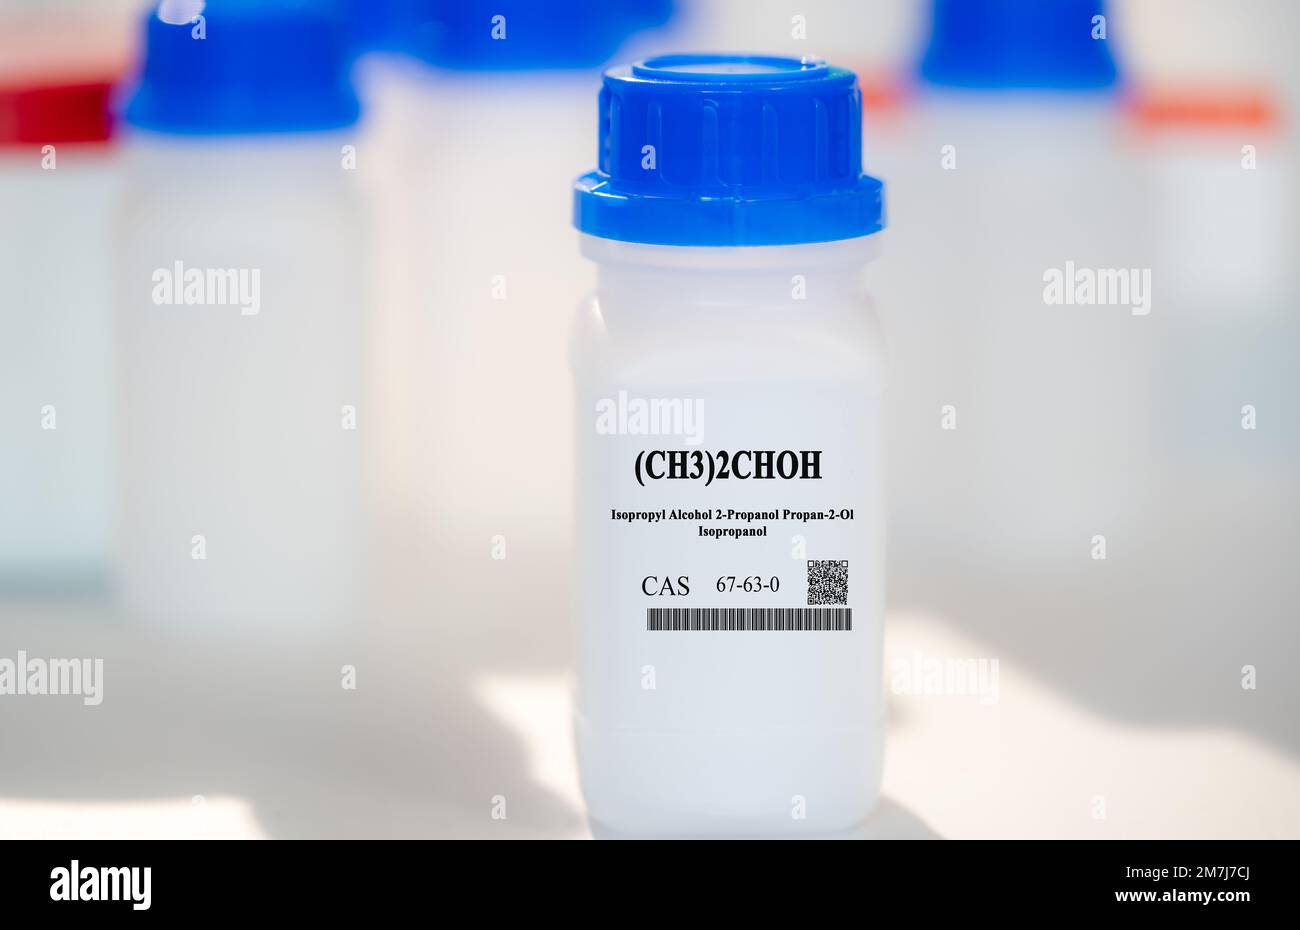 (CH3)2CHOH alcool isopropylique 2-propanol propan-2-ol isopropanol cas 67-63-0 substance chimique dans un emballage de laboratoire en plastique blanc Banque D'Images